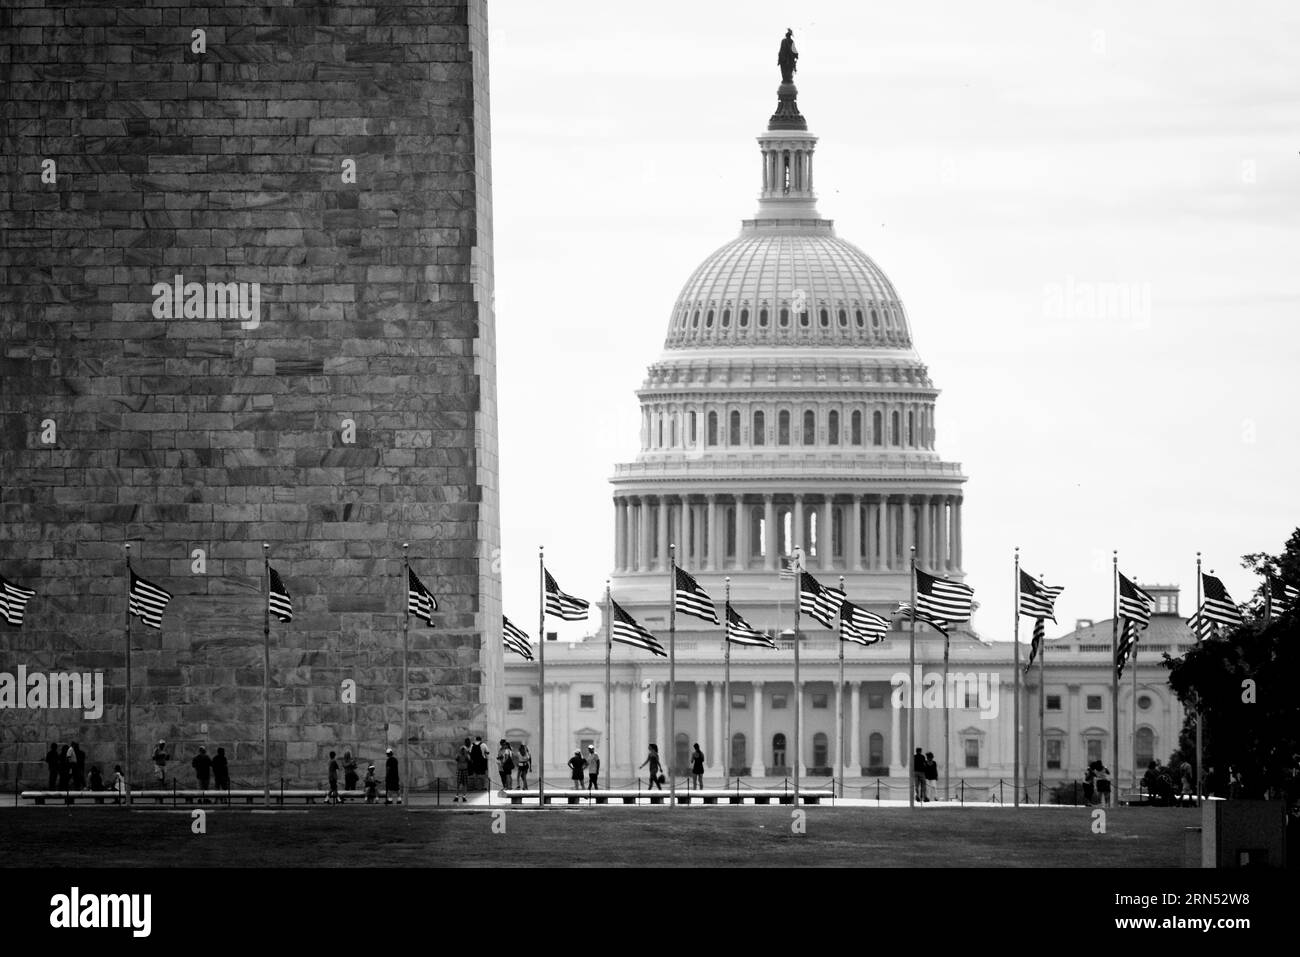 WASHINGTON, DC - La cúpula distintiva del edificio del Capitolio de EE.UU. Se encuentra en Capitol Hill, cerca del centro de Washington DC, en el extremo oriental del National Mall. Es el hogar del Congreso de los Estados Unidos. La Cámara de Representantes ocupa un ala, mientras que el Senado ocupa el otro. Foto de stock